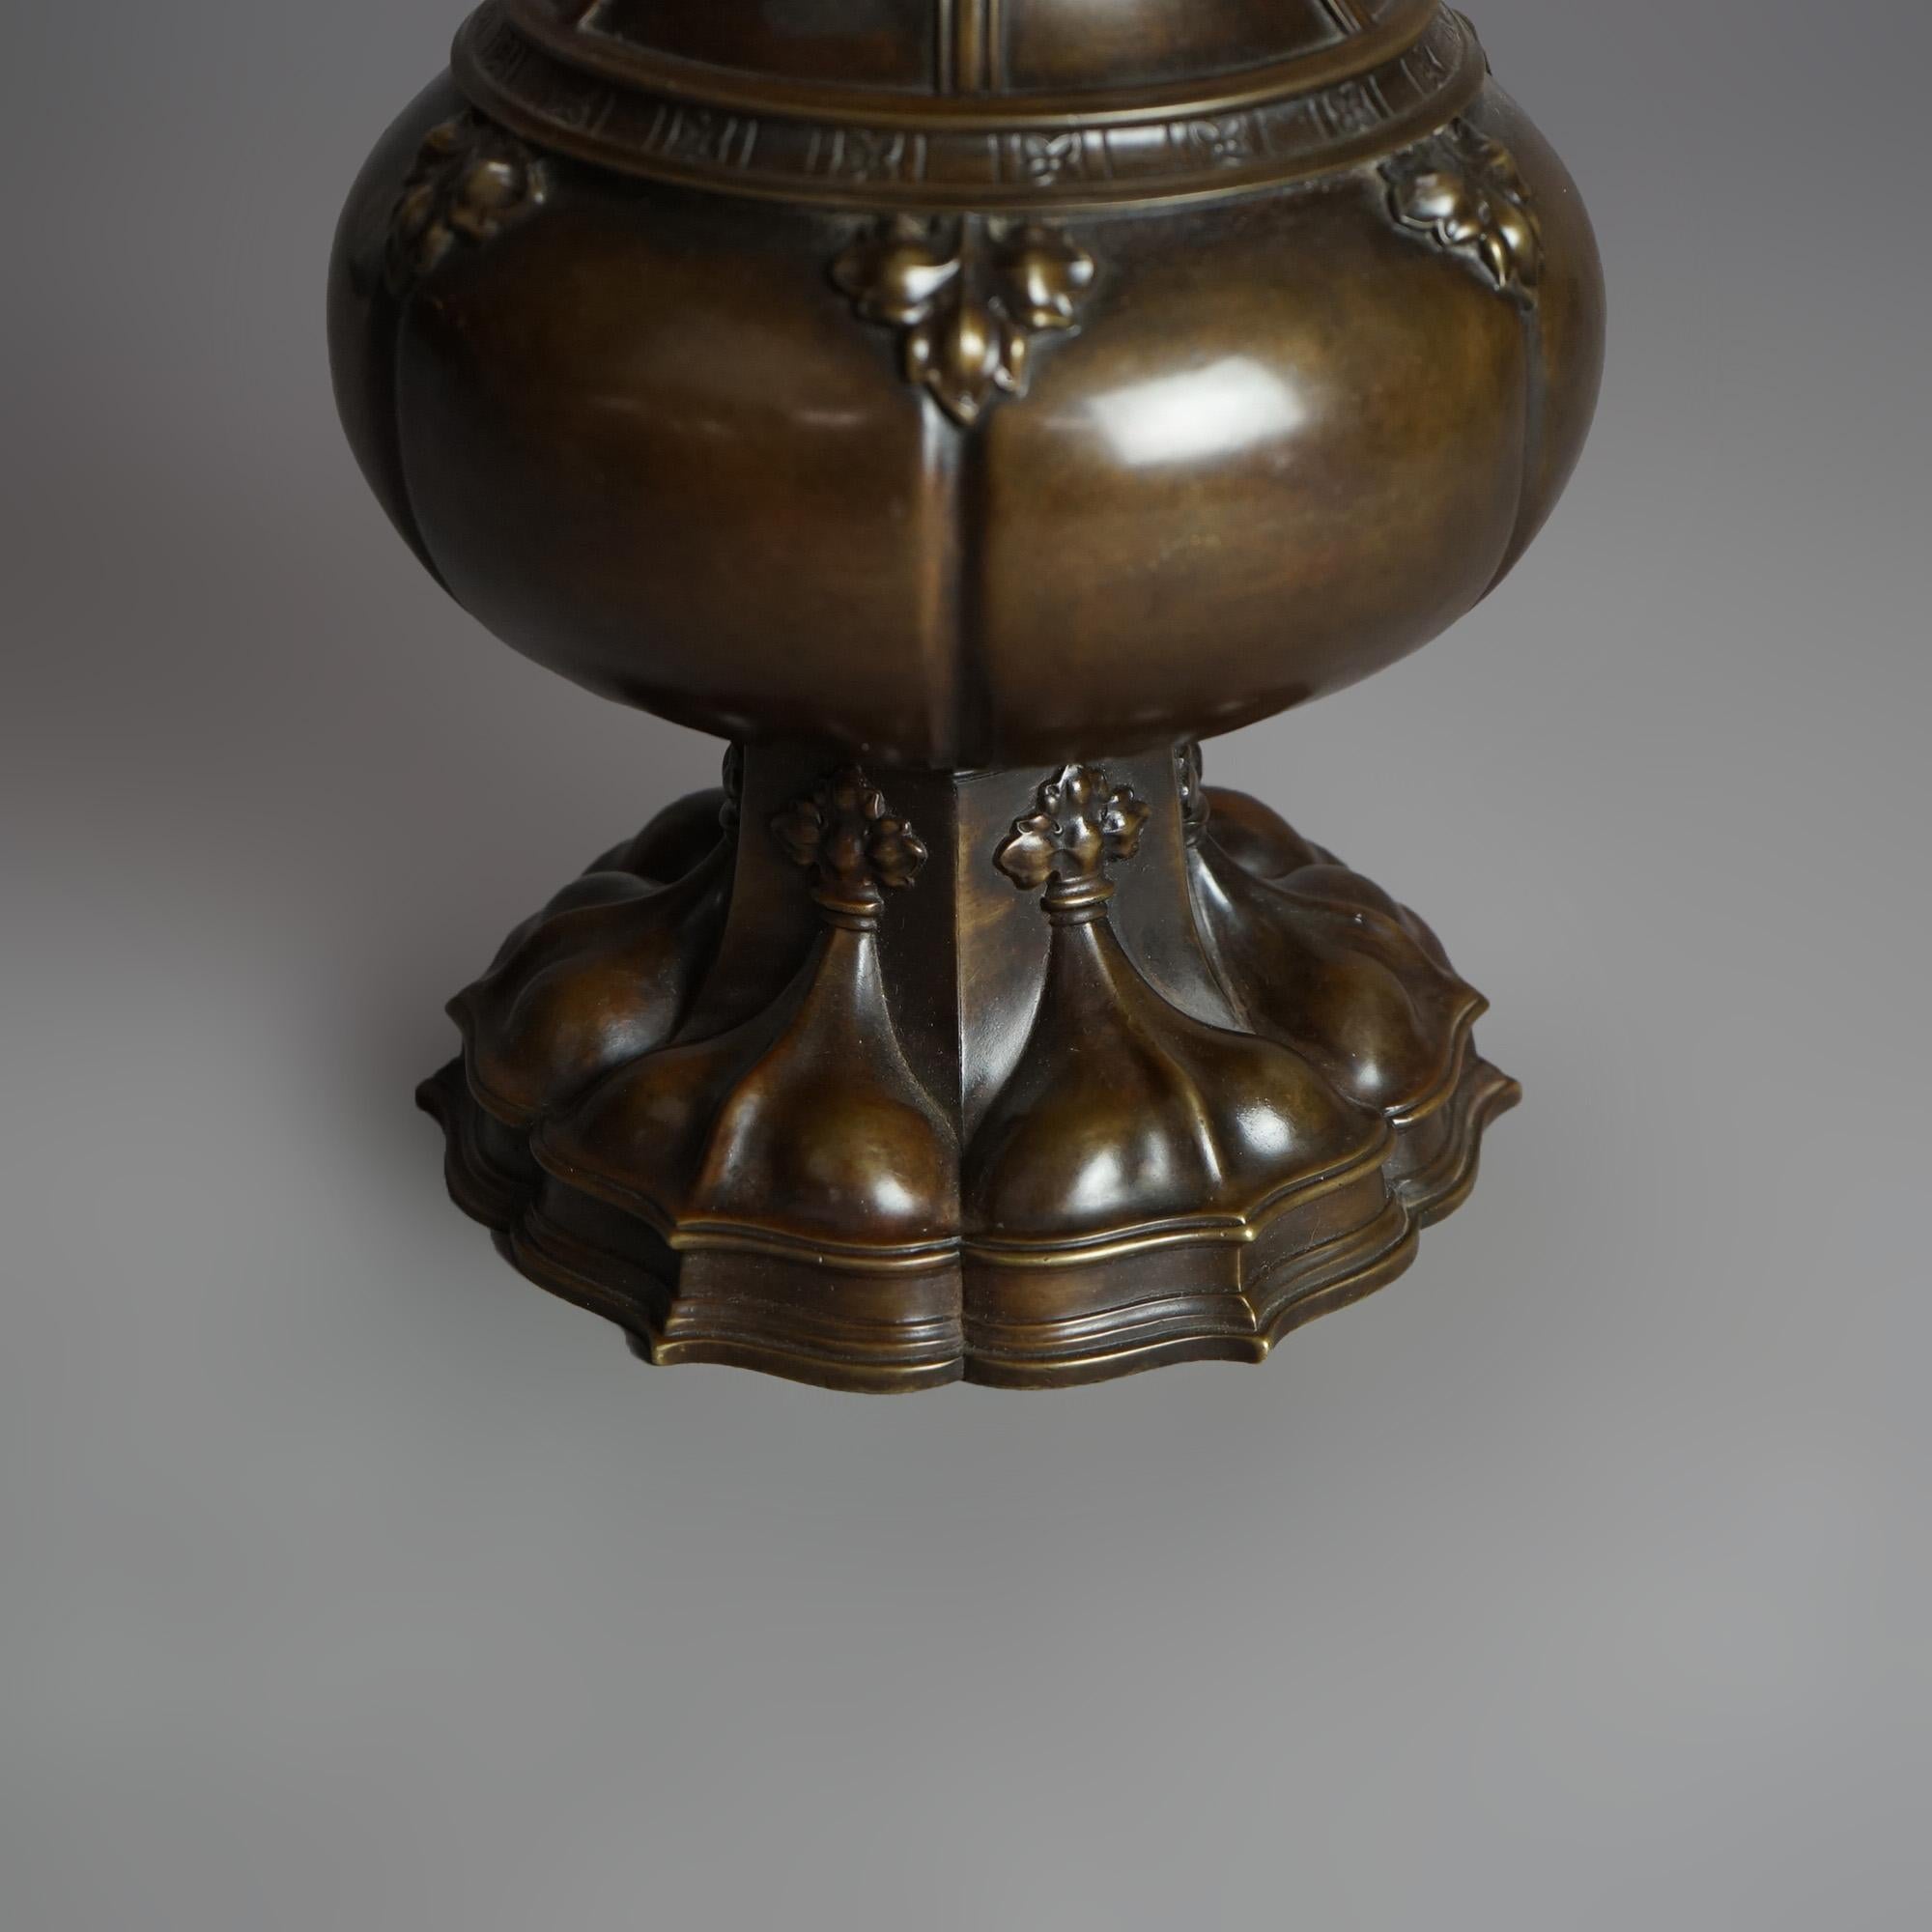 20th Century Antique Chinese Form Bronze Vase Signed Gorham Circa 1900